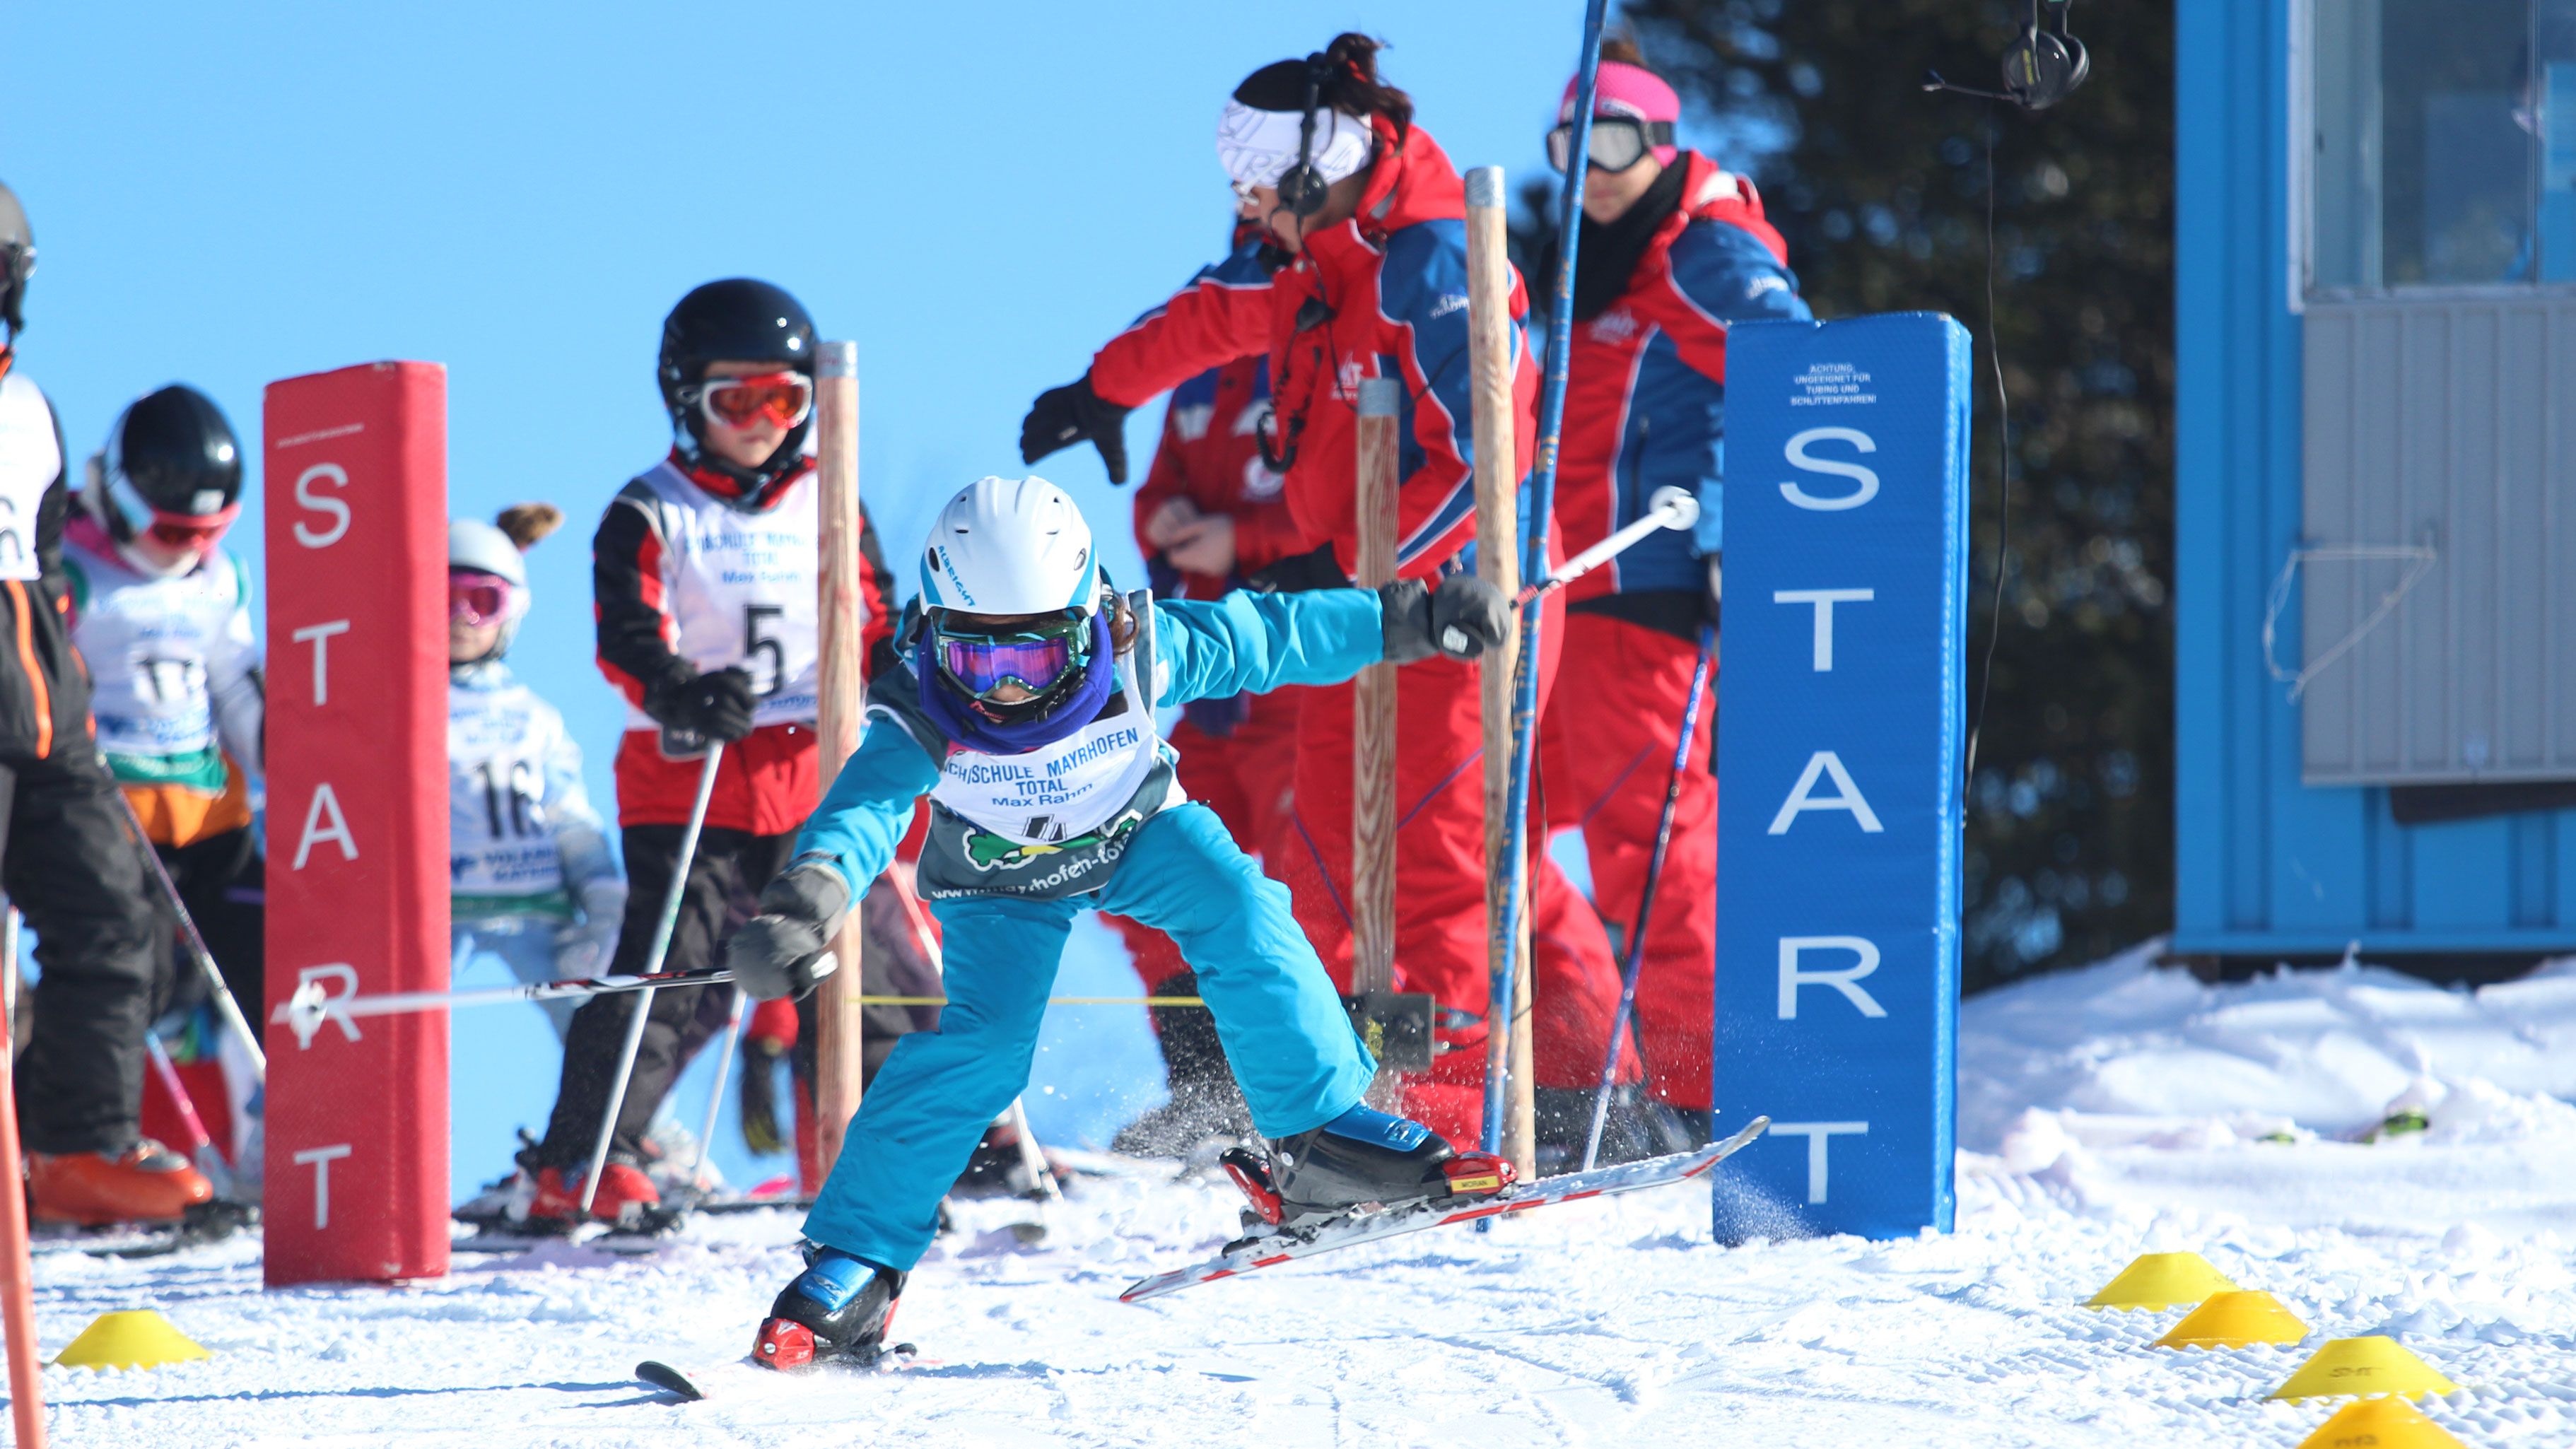 kinder Ski race smt mayrhofen